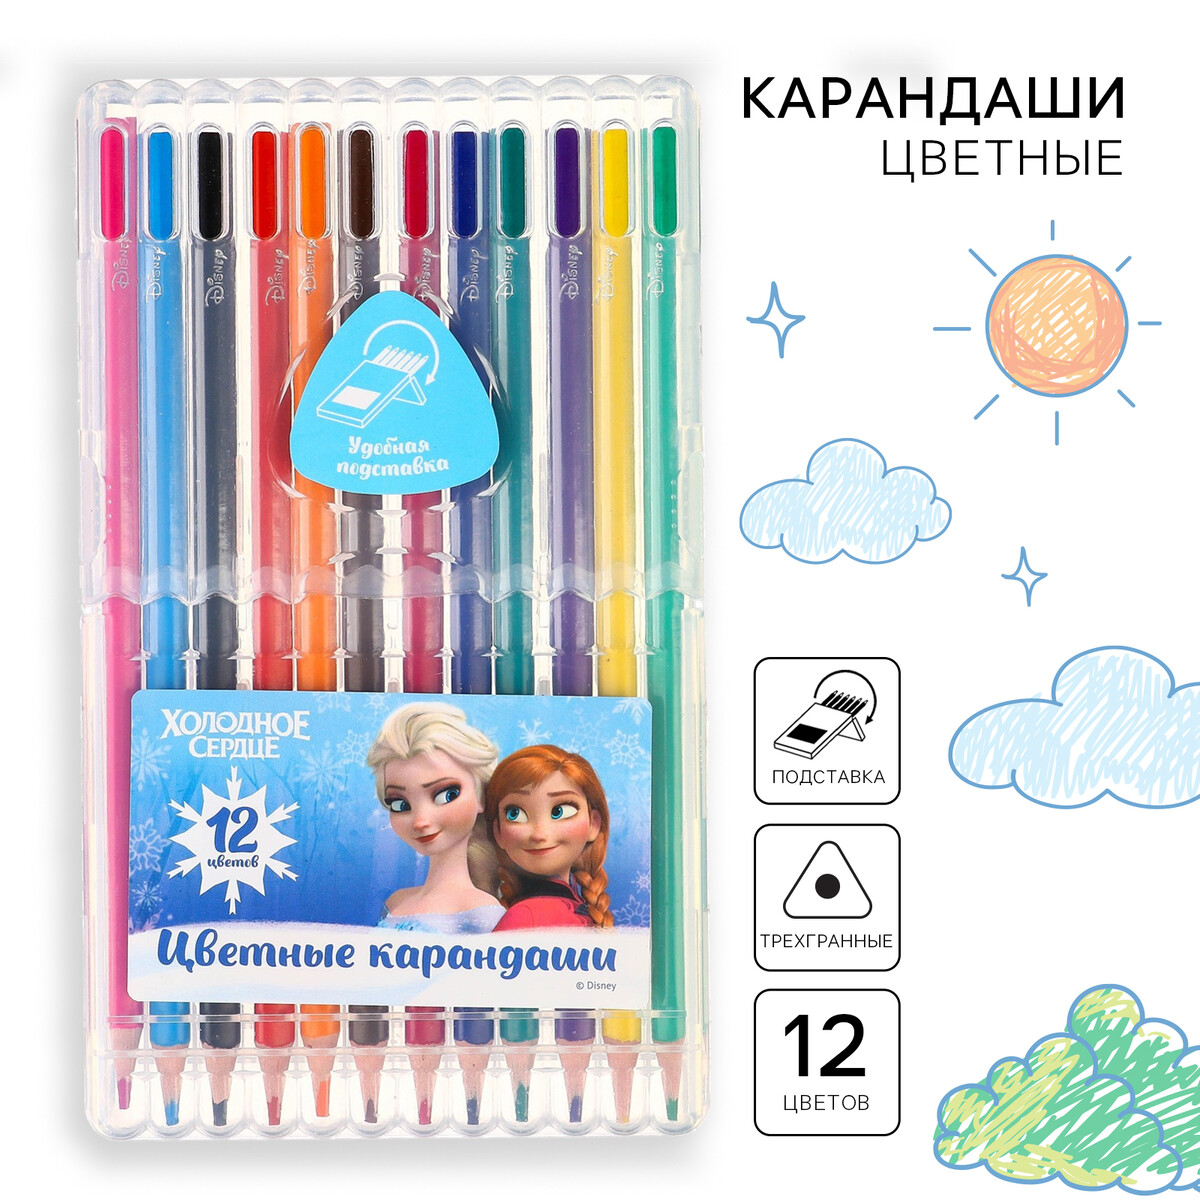 Цветные карандаши, 12 цветов, трехгранные, холодное сердце